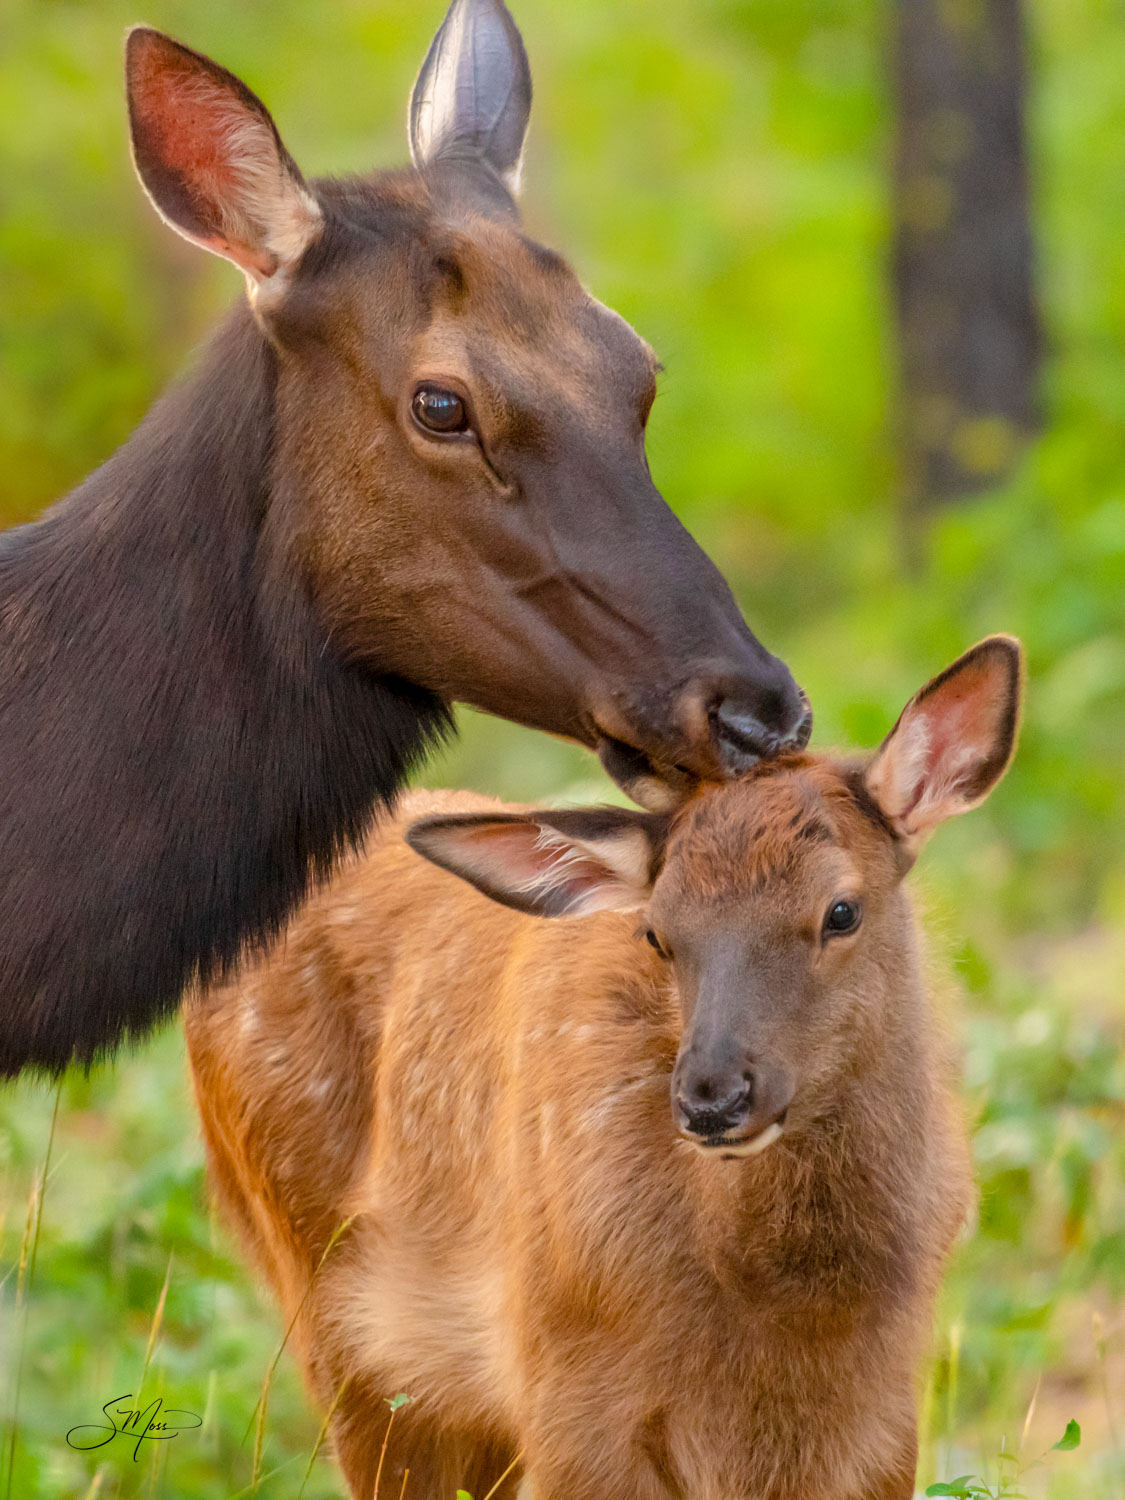 Cow elk kissing baby on head